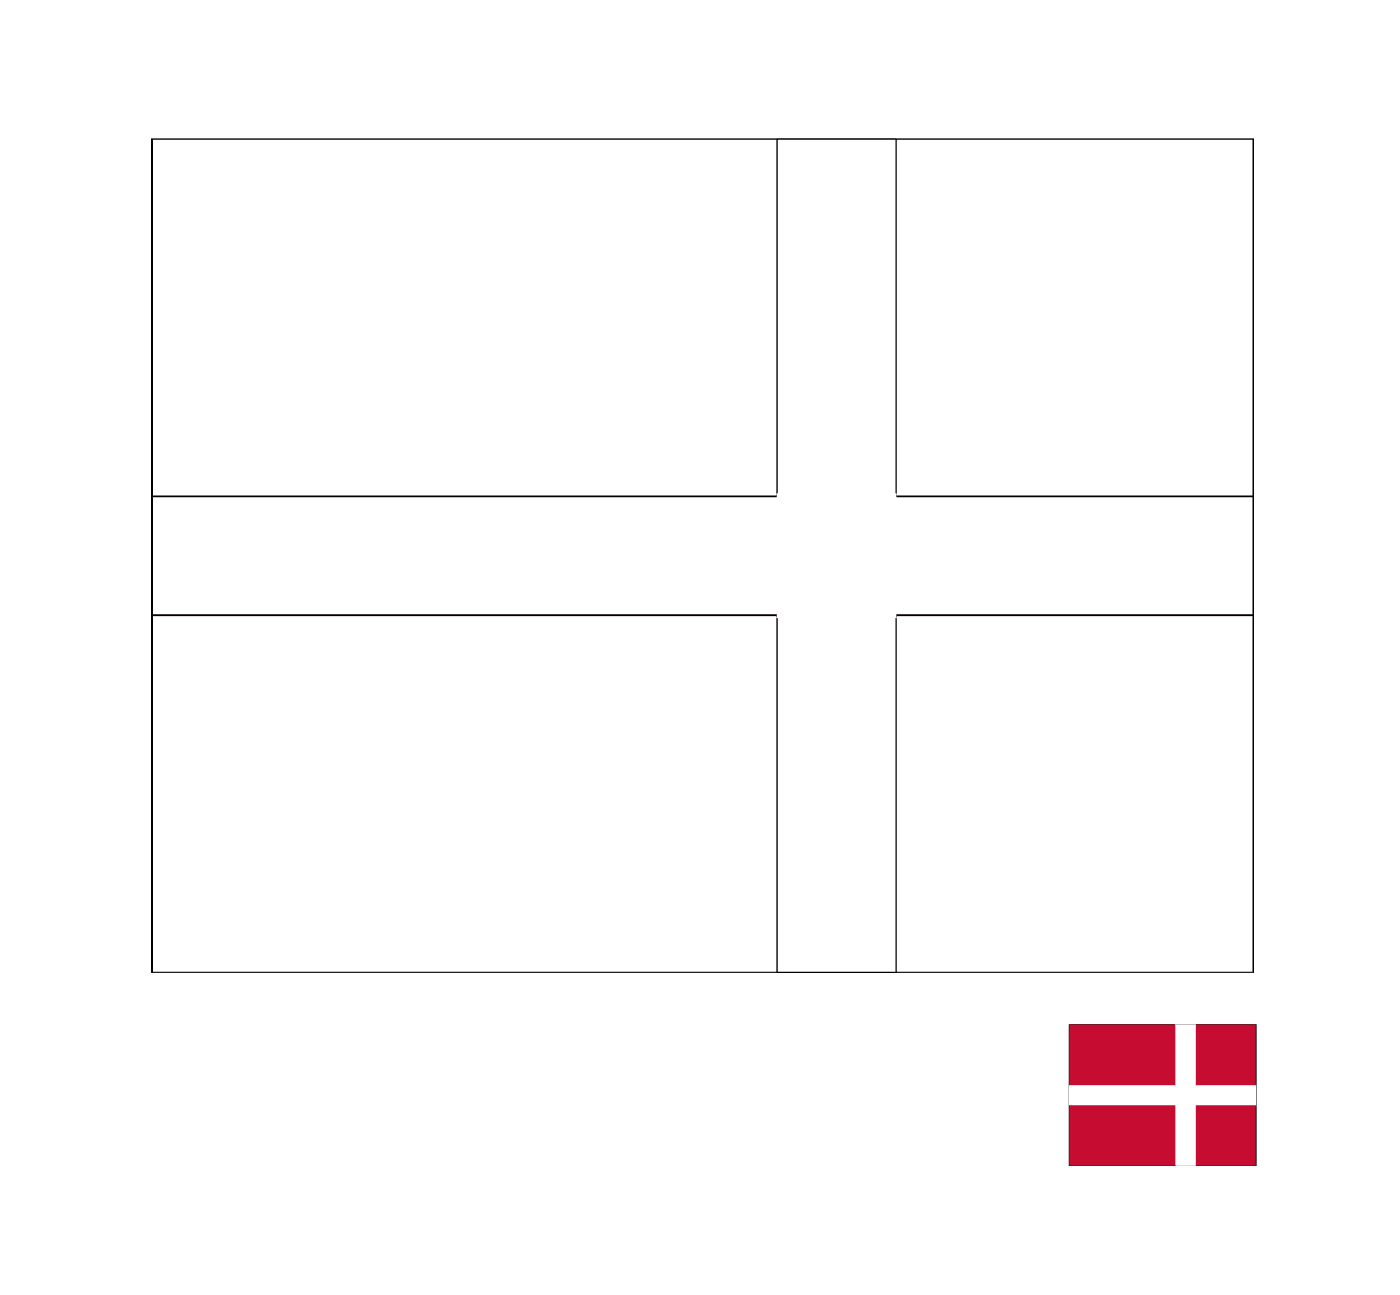  A flag of Denmark 